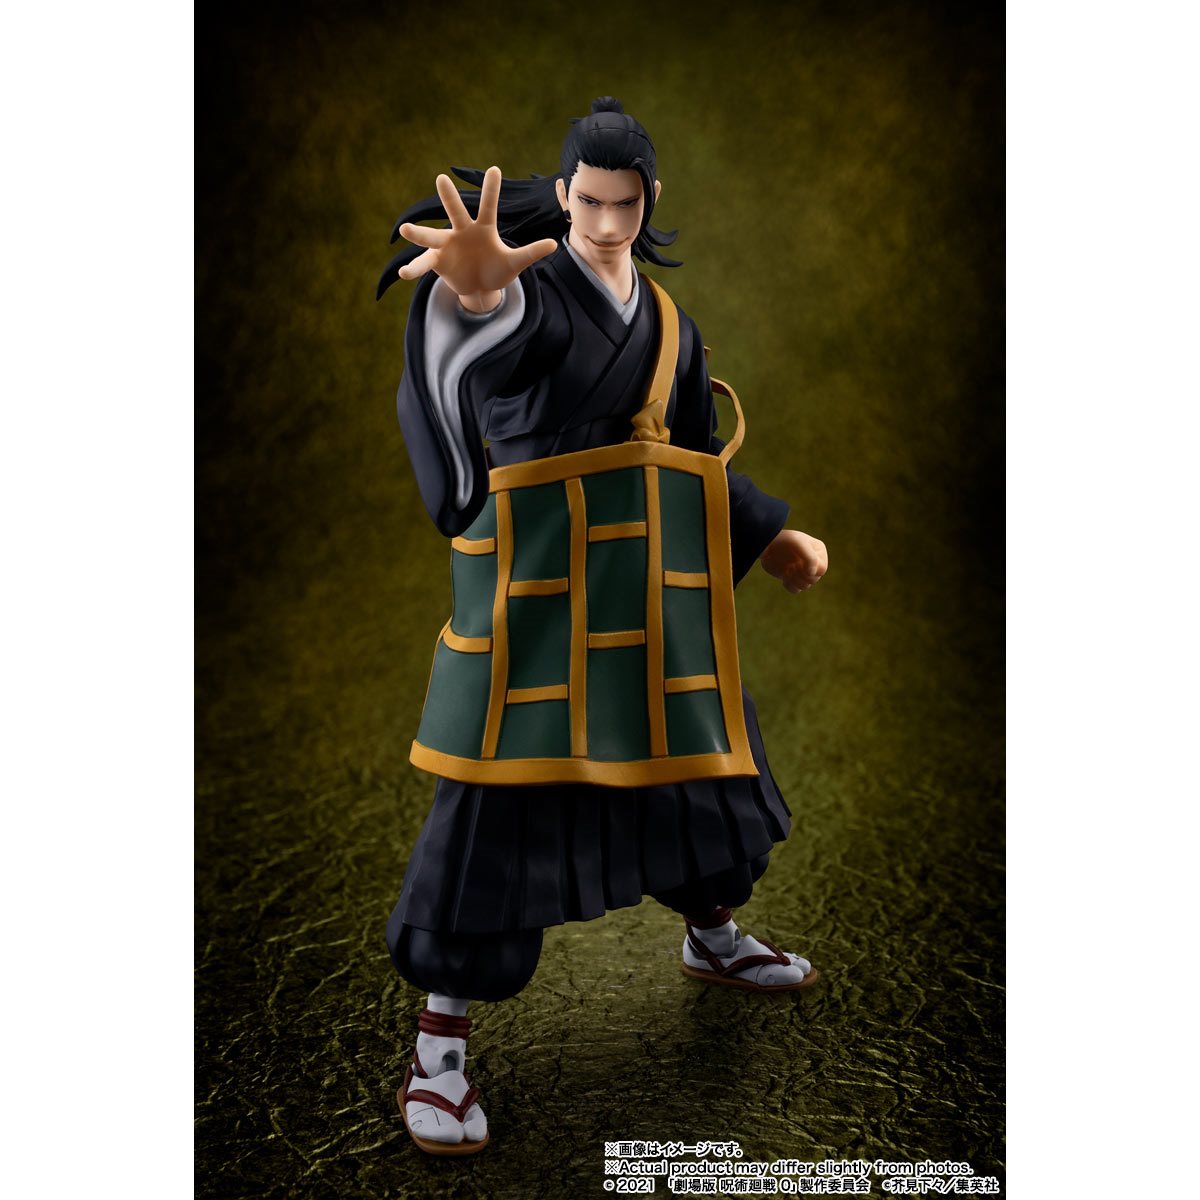 Jujutsu Kaisen 0 - Suguru Geto Action Figure S.H.Figuarts Bandai Tamashii Nations